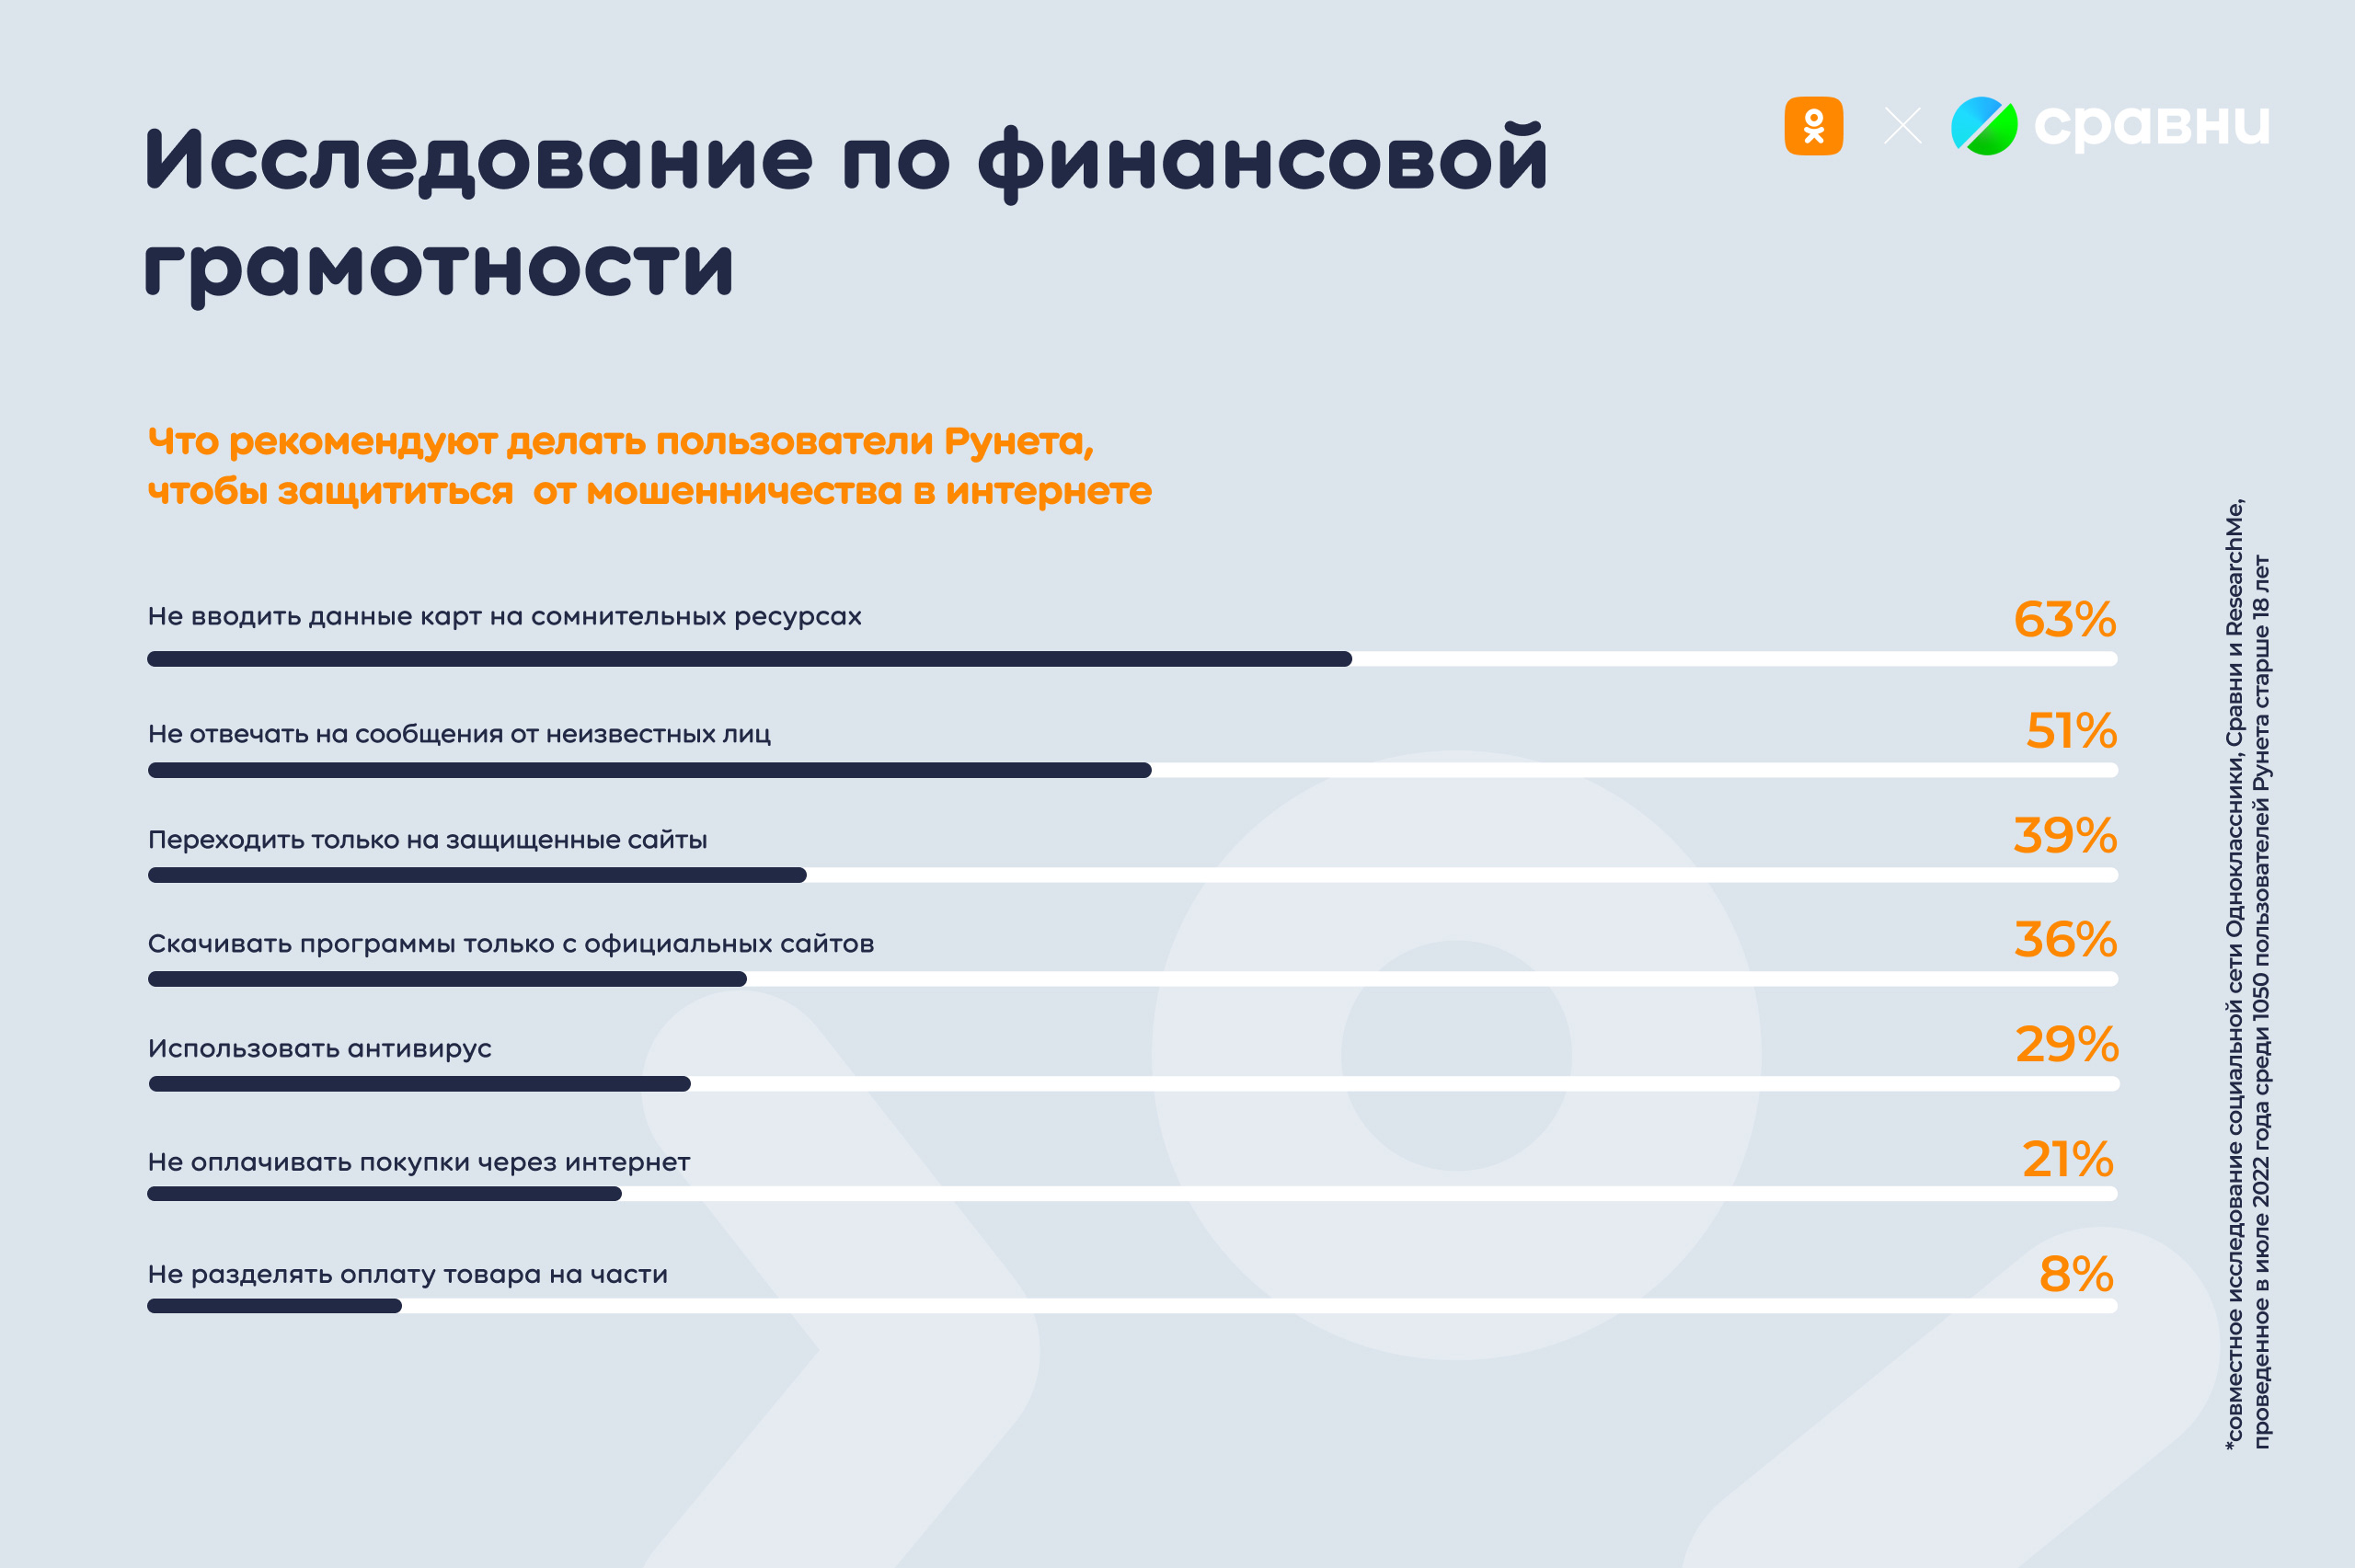 Каждый пятый пользователь Рунета использует специальную карту для покупок в Интернете и социальных сетях | Новости